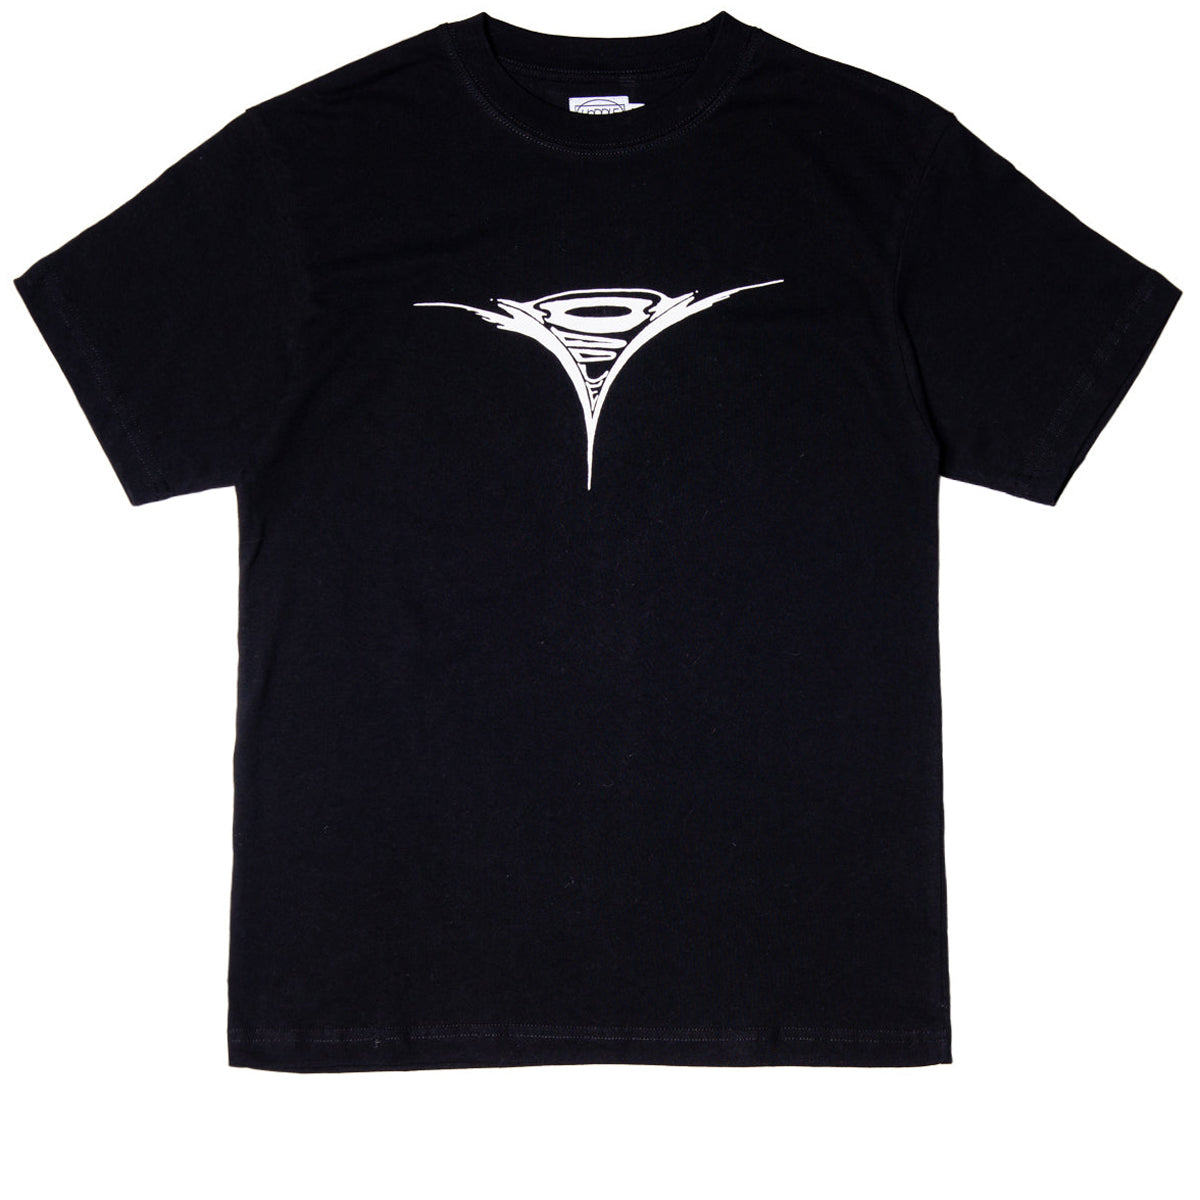 Hoddle Turbo Dolphin Logo T-Shirt - Black image 1